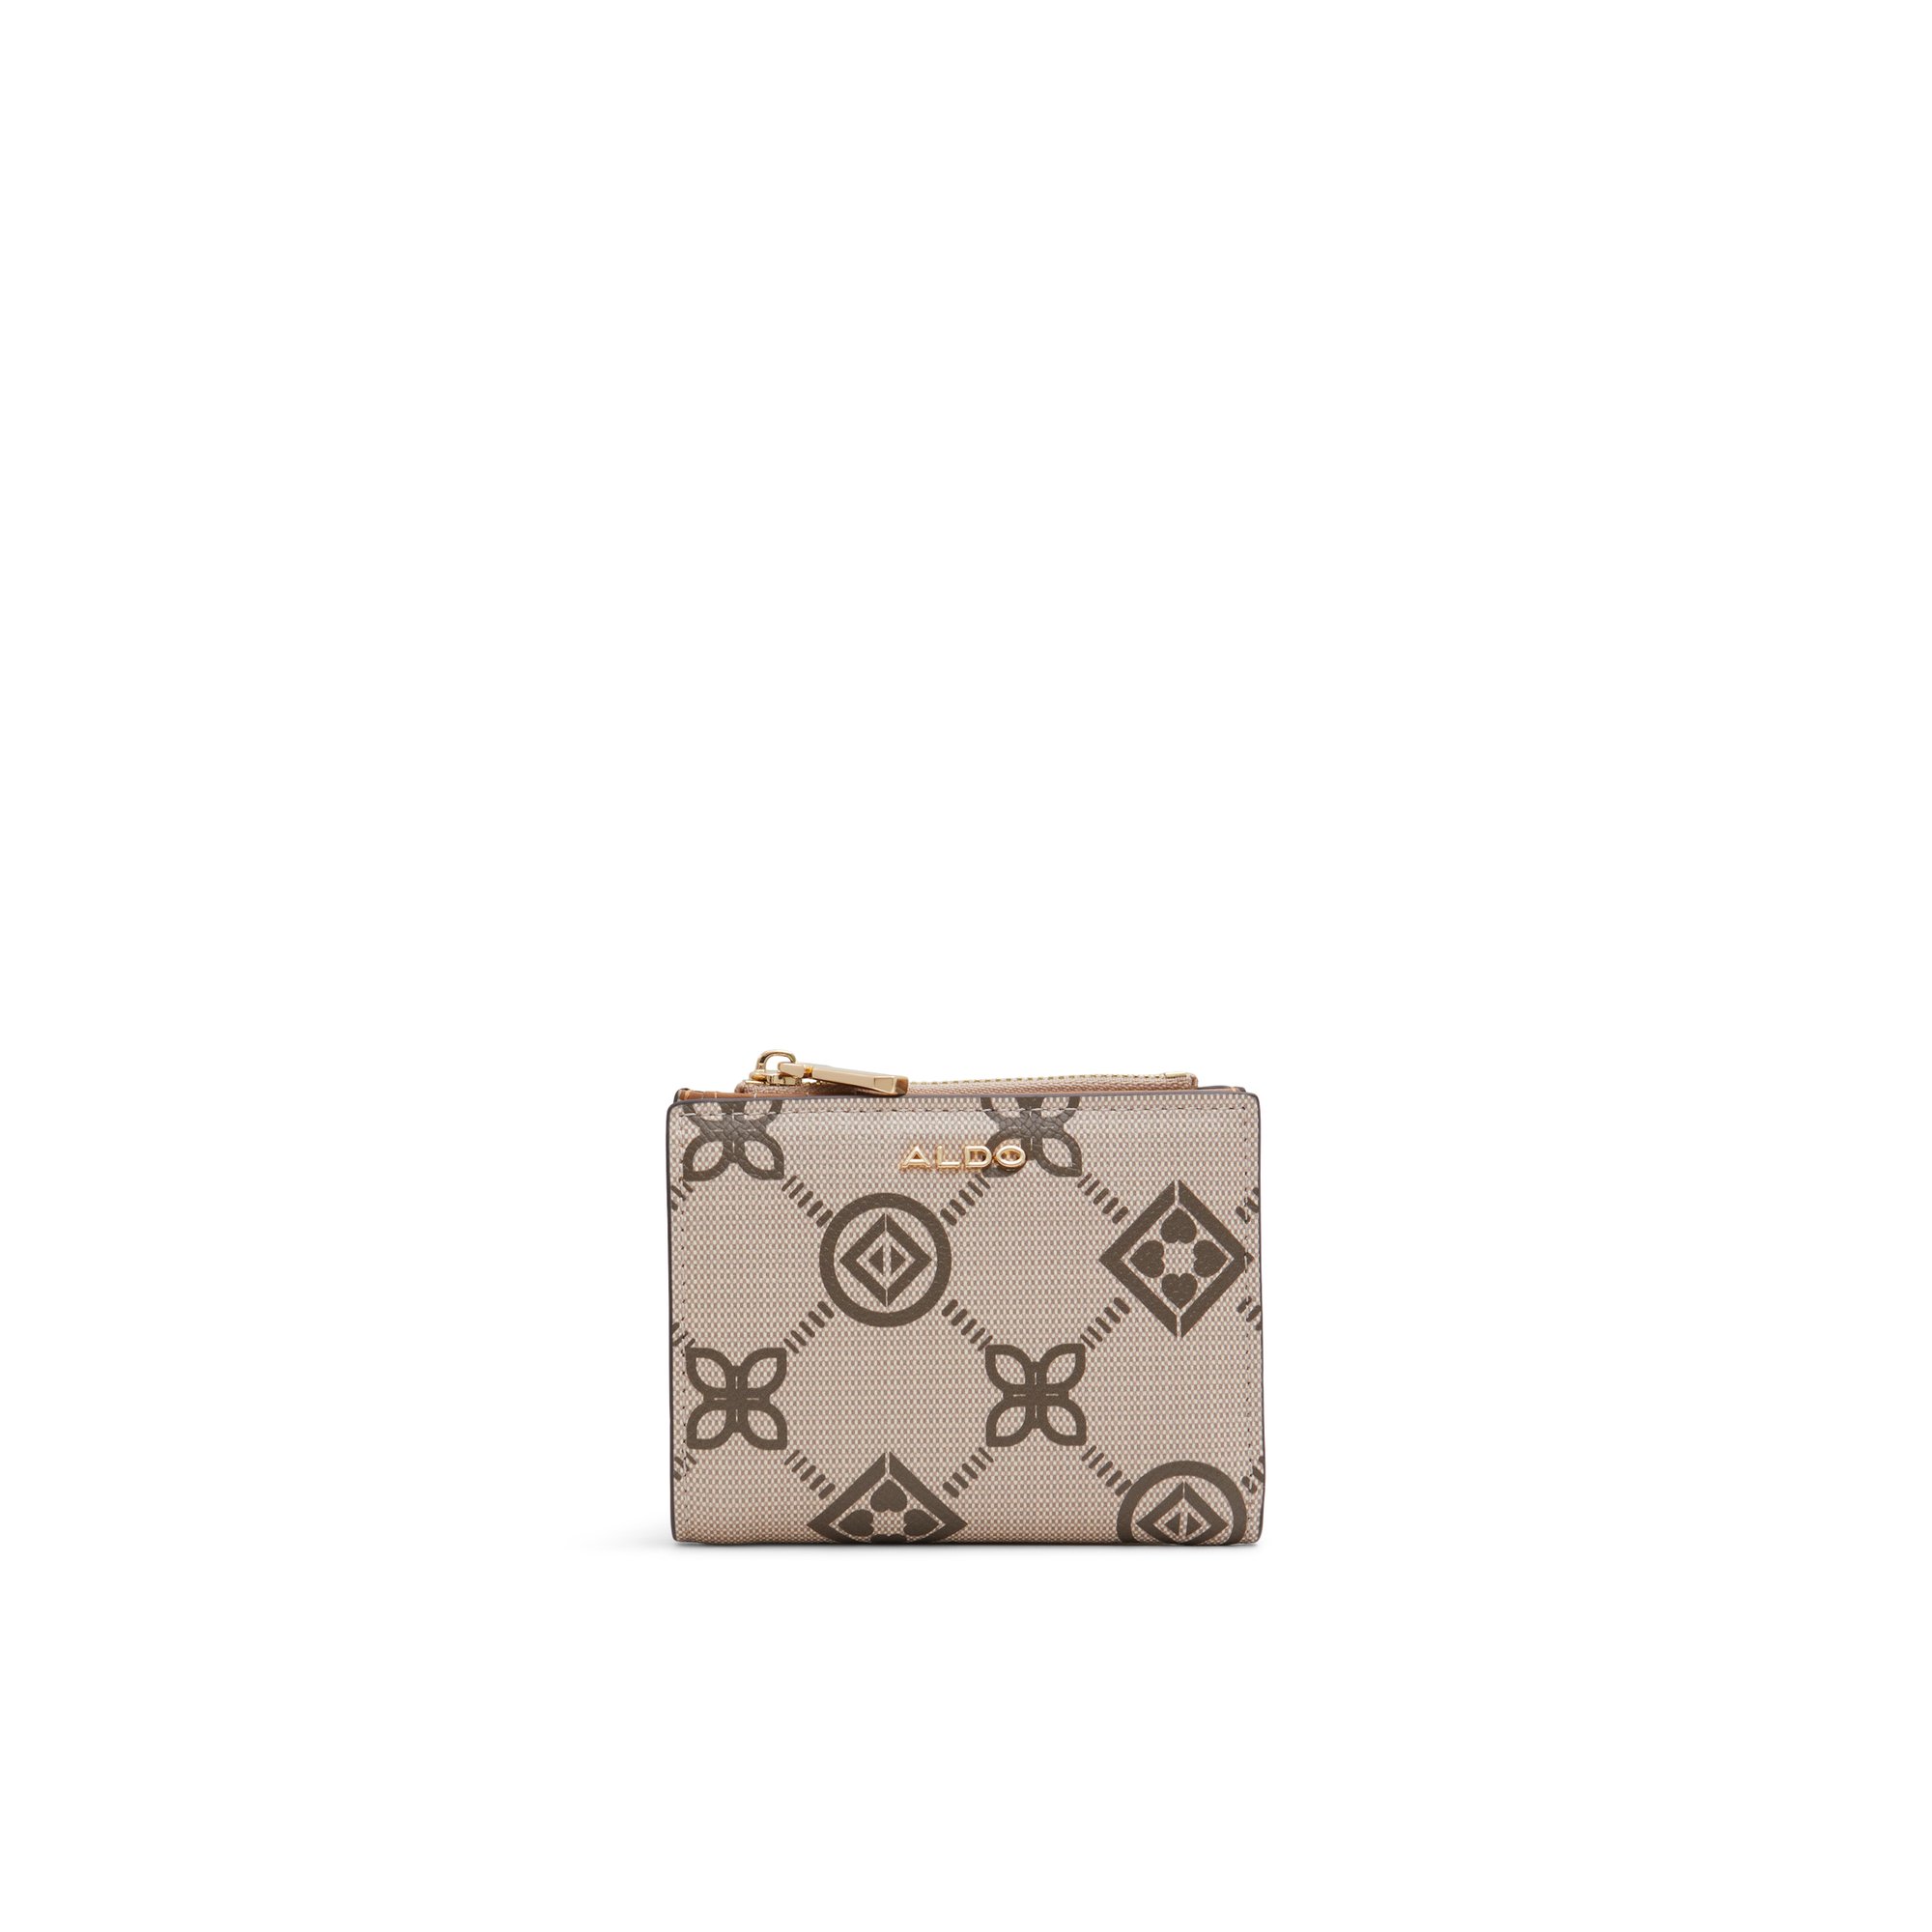 ALDO Vervene - Women's Wallet Handbag - Beige